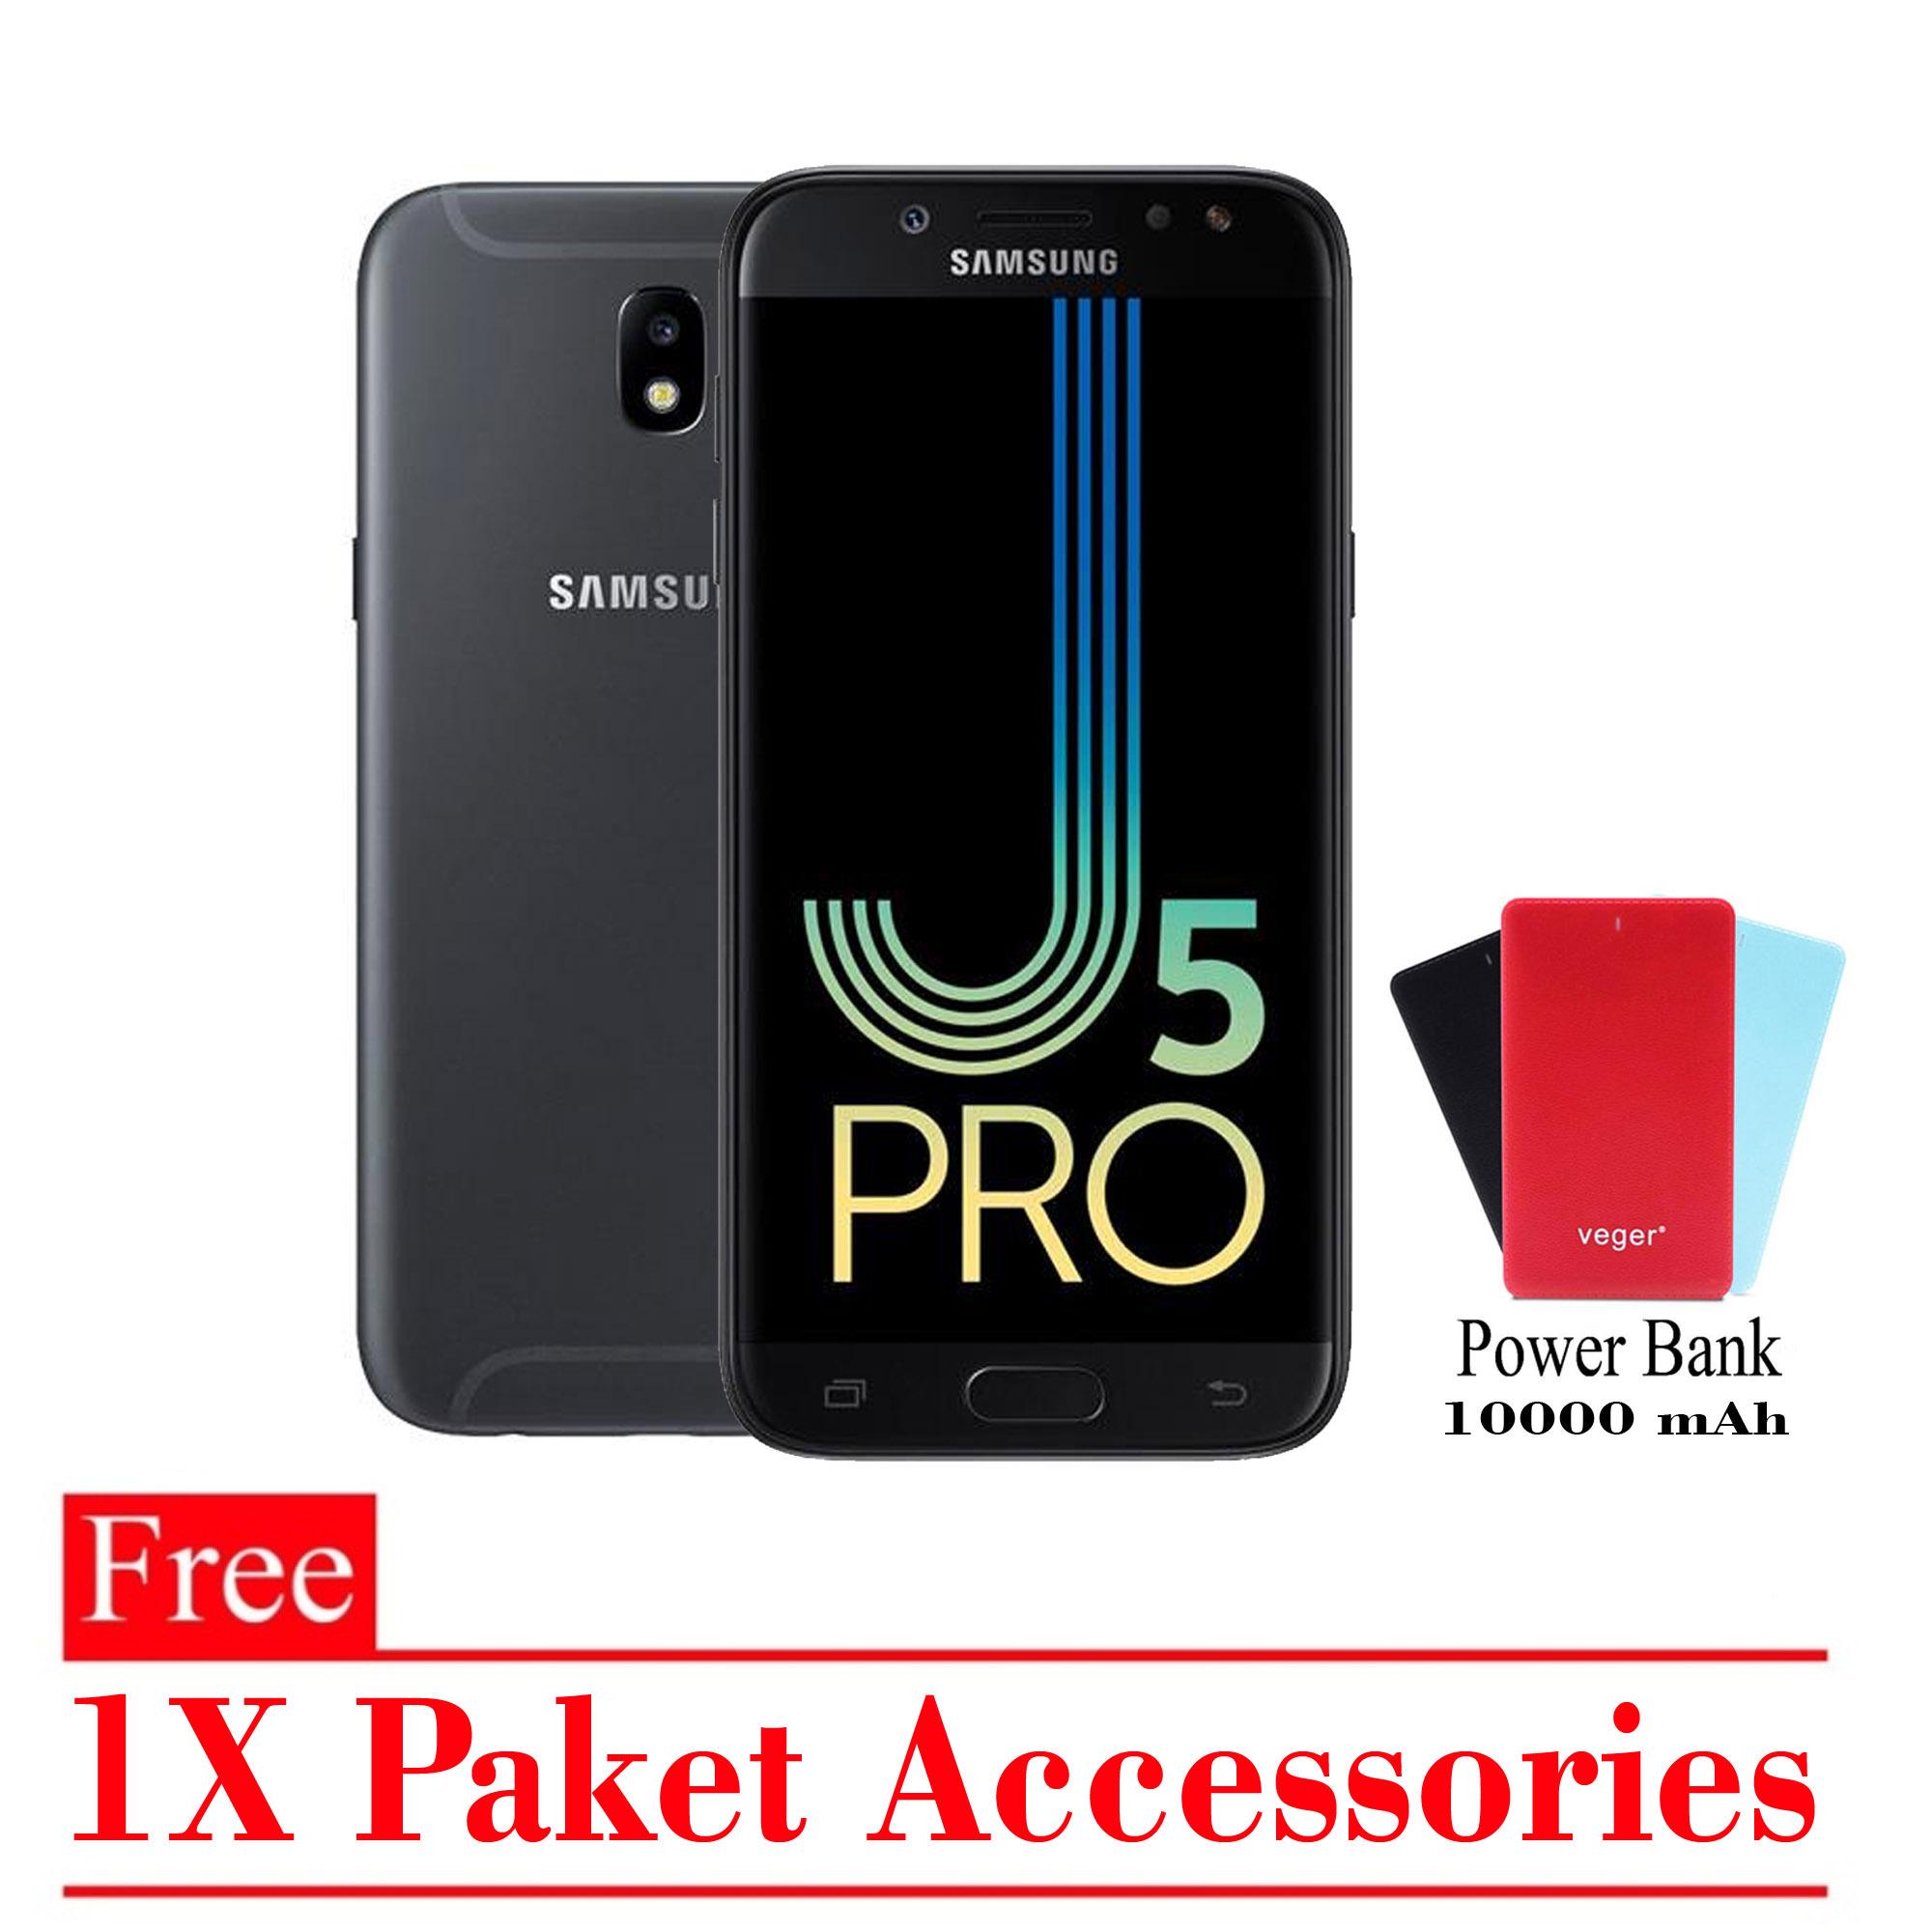 Samsung Galaxy J5 Pro Ram 3GB/32GB (Free 1x Paket Accessories) Smartphone